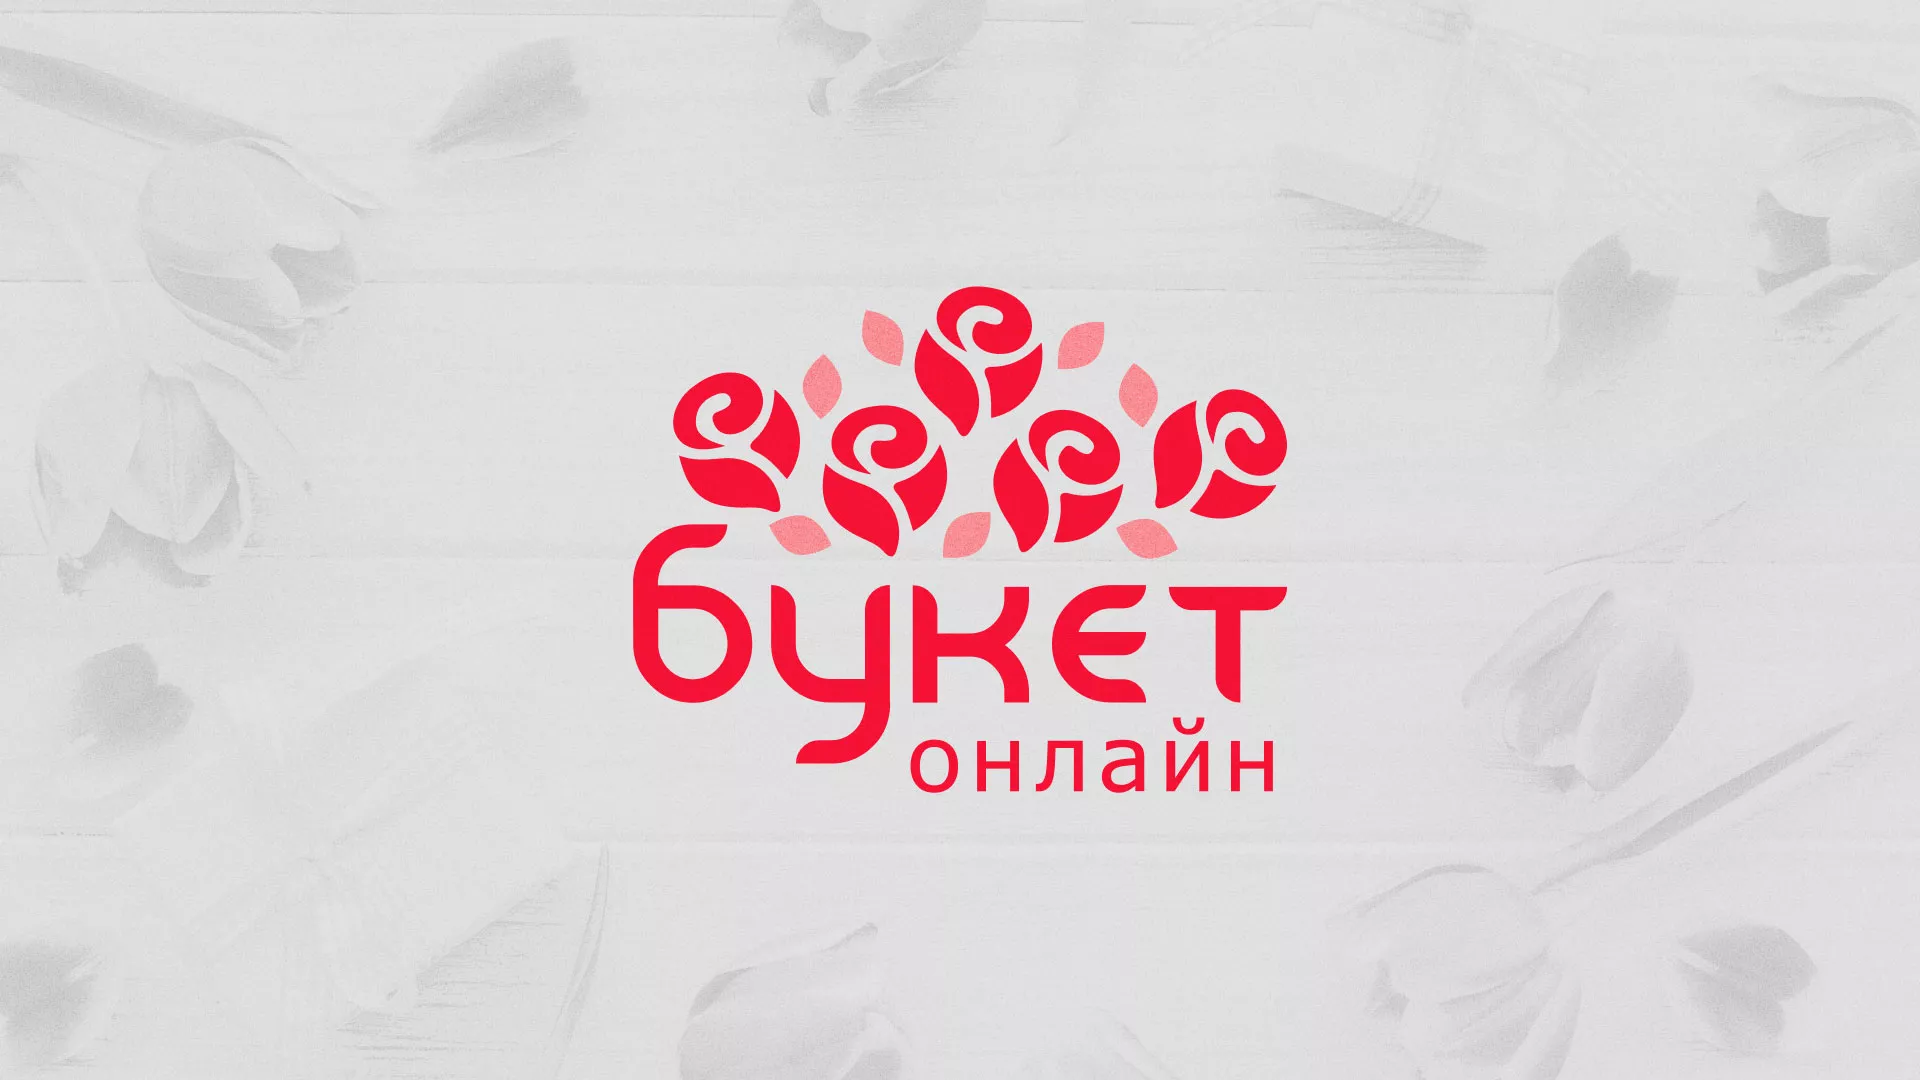 Создание интернет-магазина «Букет-онлайн» по цветам в Краснокаменске